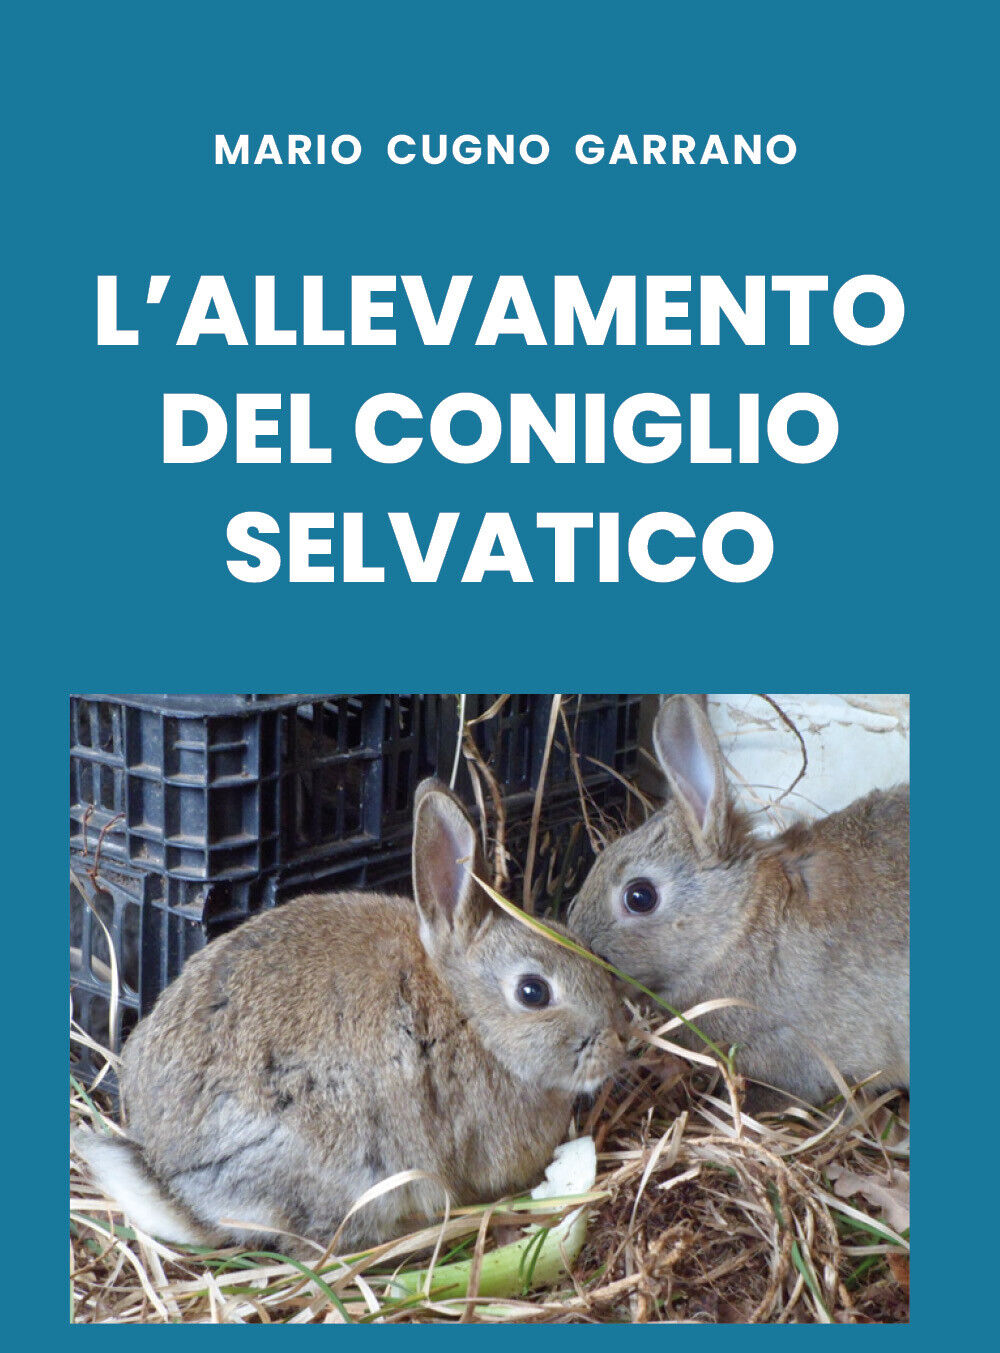 L'allevamento del coniglio selvatico di Mario Cugno Garrano,  2019,  Youcanprint